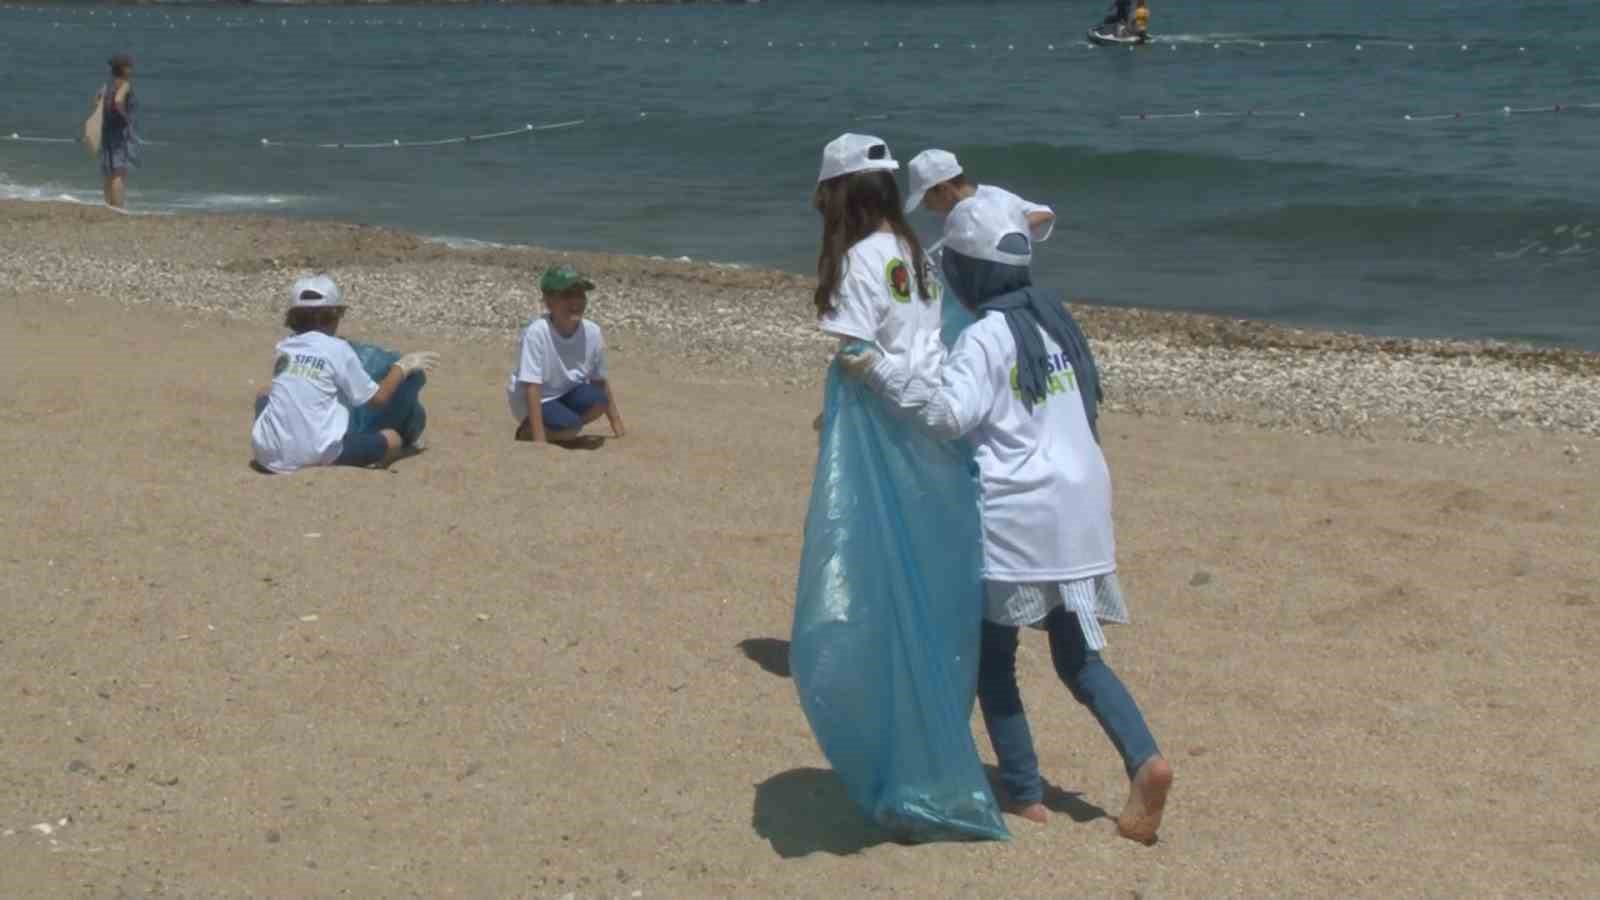 arnavutkoyde cevre haftasi nedeniyle ogrenciler karaburun sahilini temizledi 5